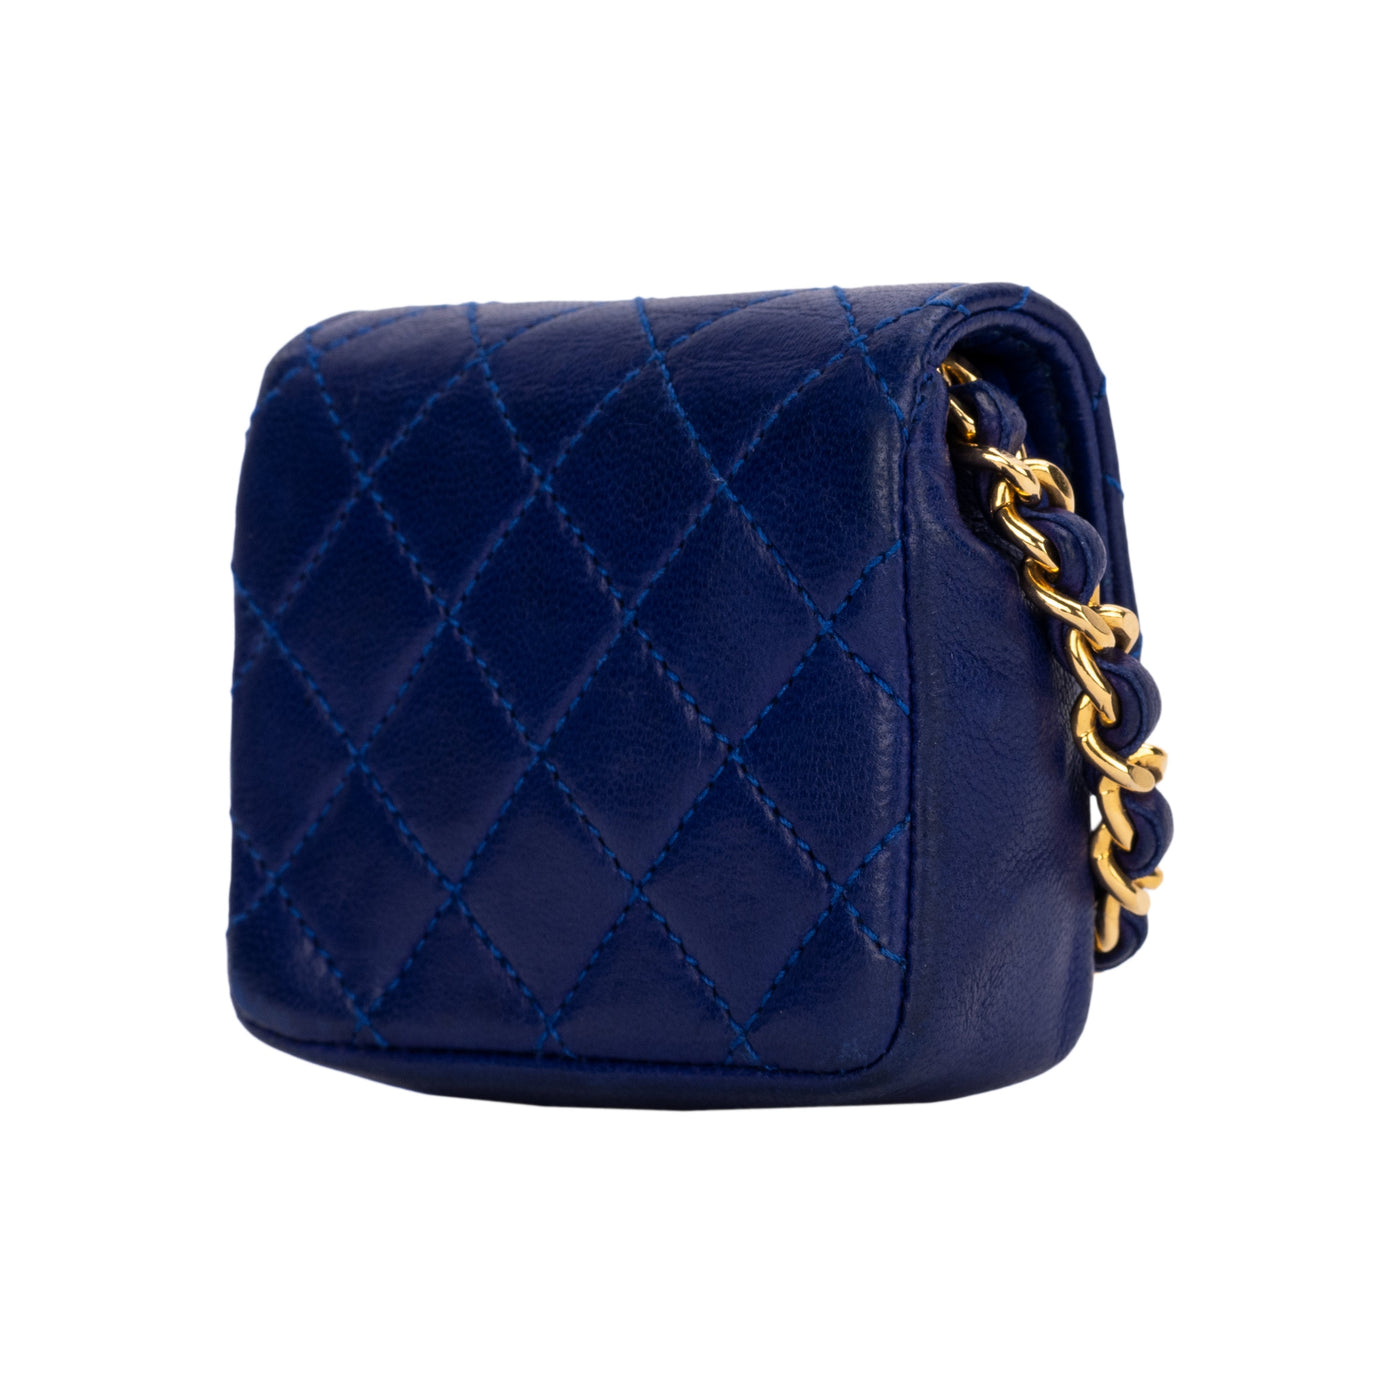 Chanel blue matelassé mini flap leather bag pre-owned nft